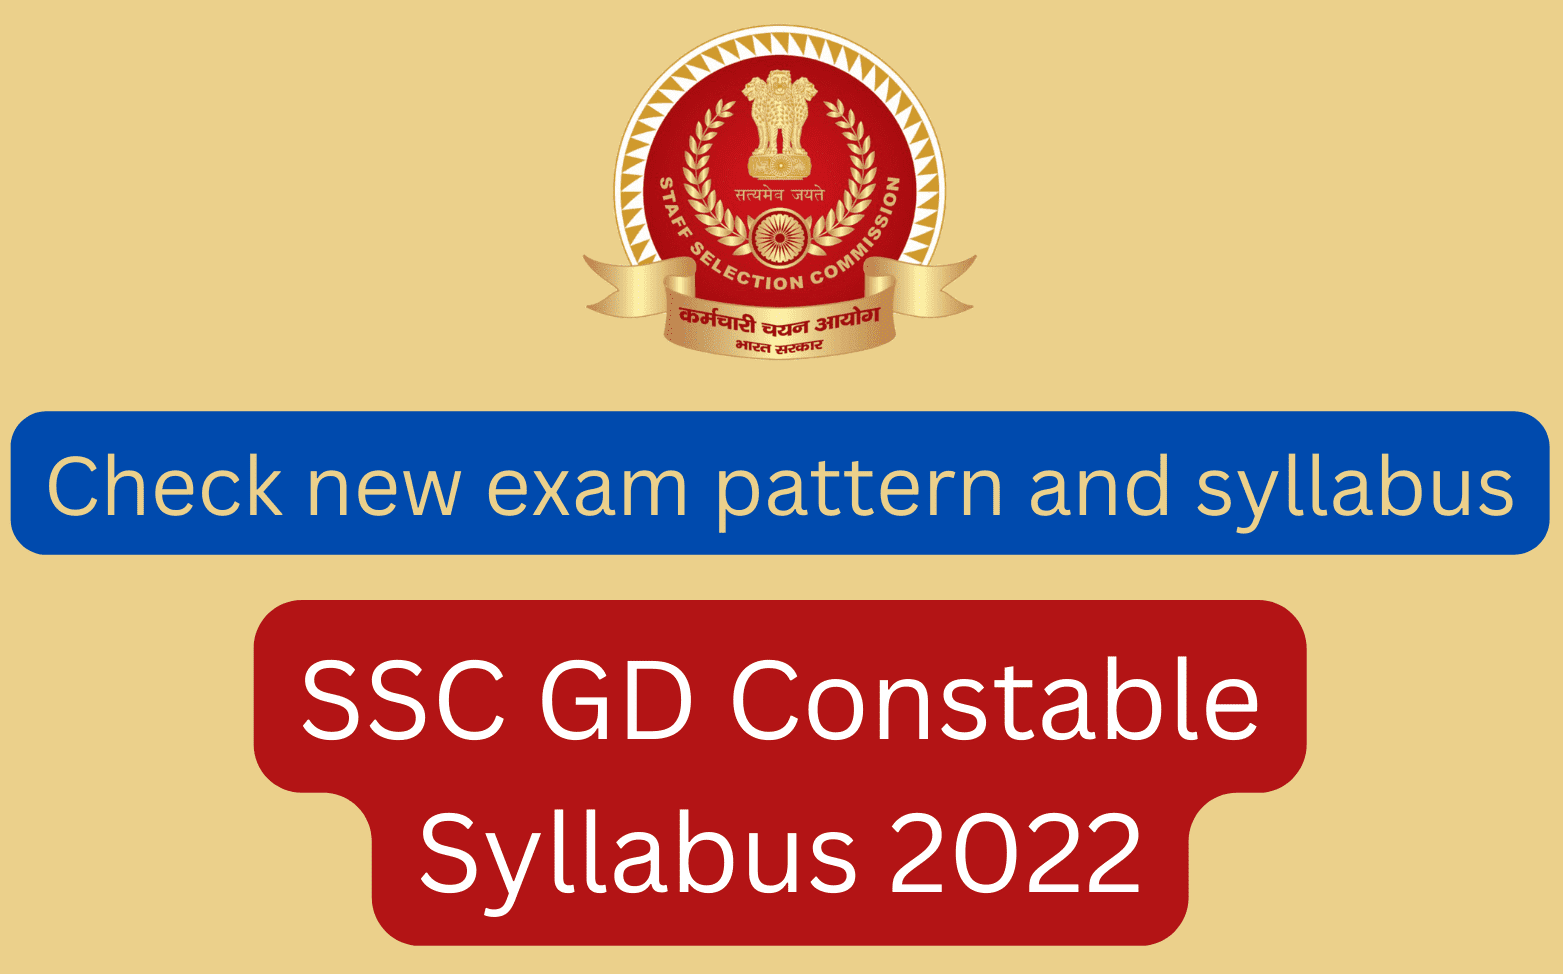 SSC GD Constable Syllabus 2022